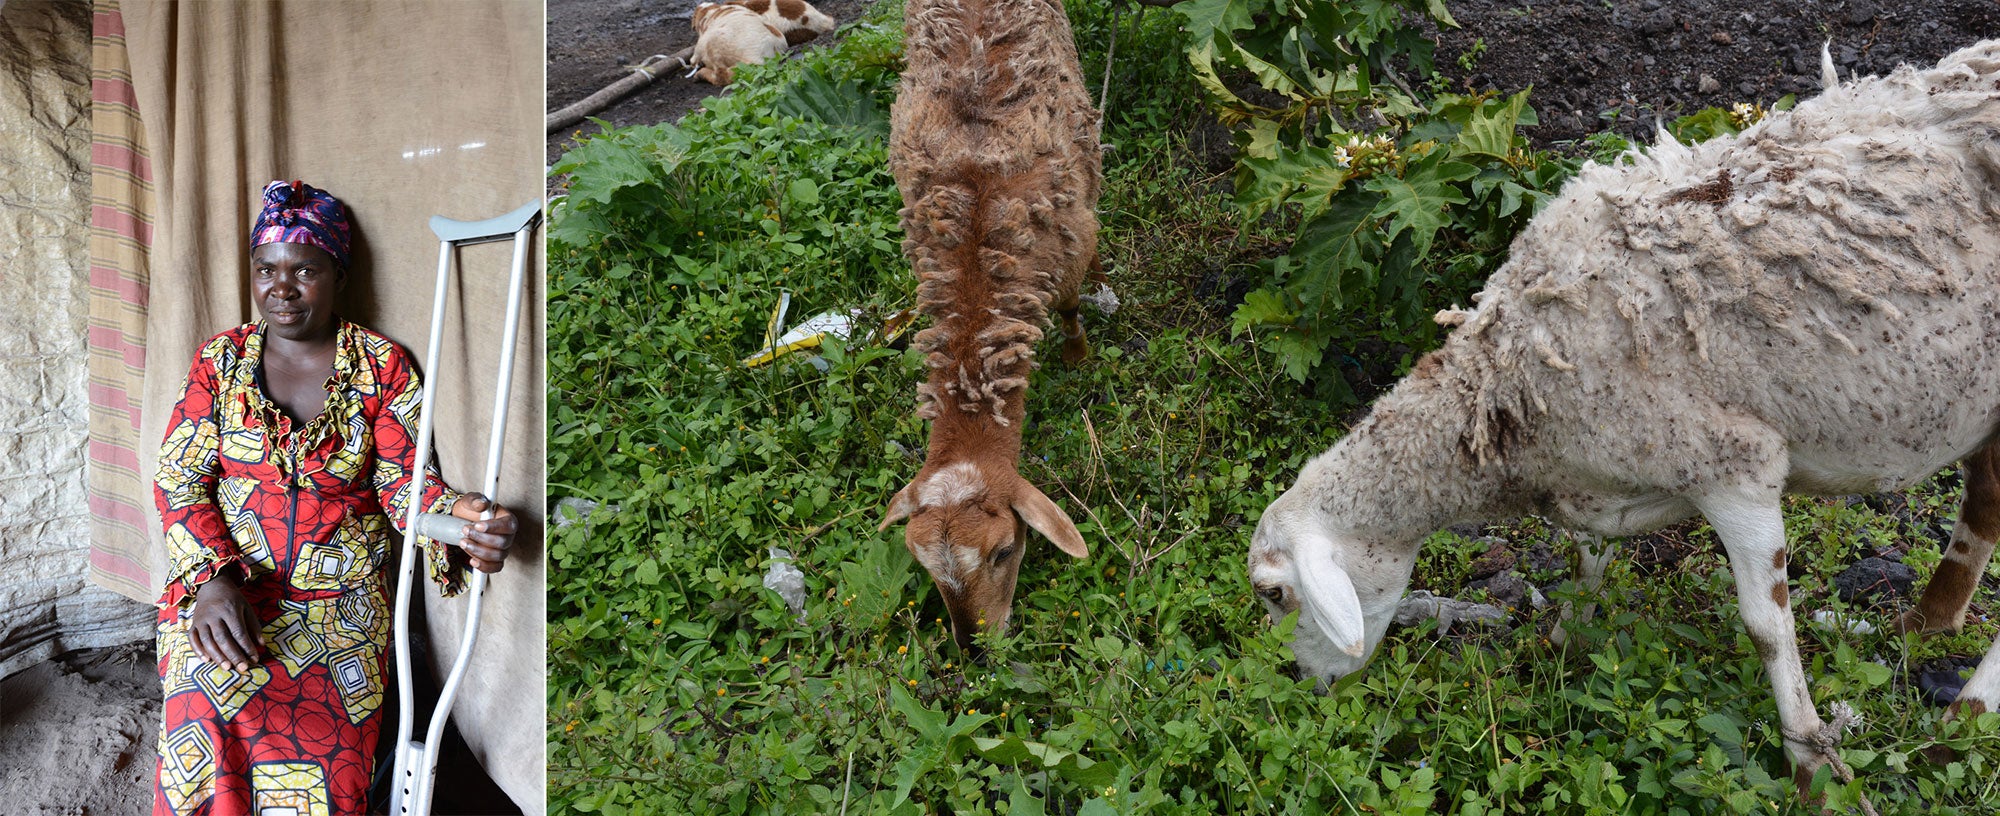 Aunque su pierna resultó gravemente herida por metralla hace unos años, Rosette ha perseverado, apoyando a su familia criando cabras y vendiendo sus hermosas cestas hechas a mano.